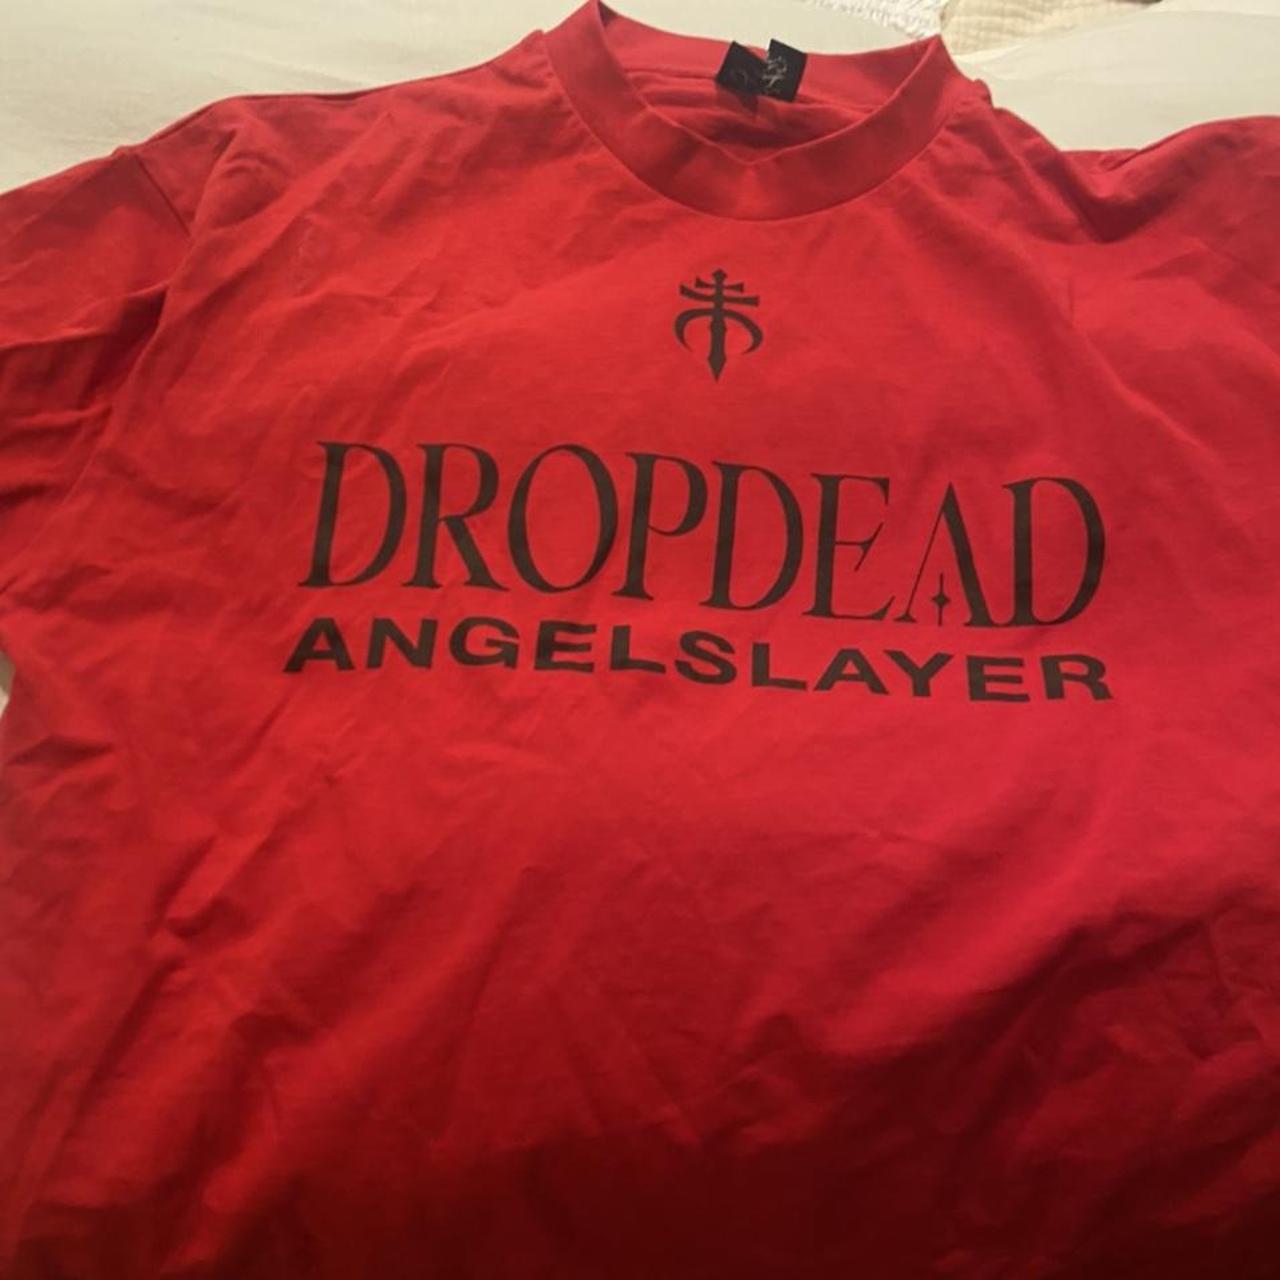 Dropdead Women's T-shirt